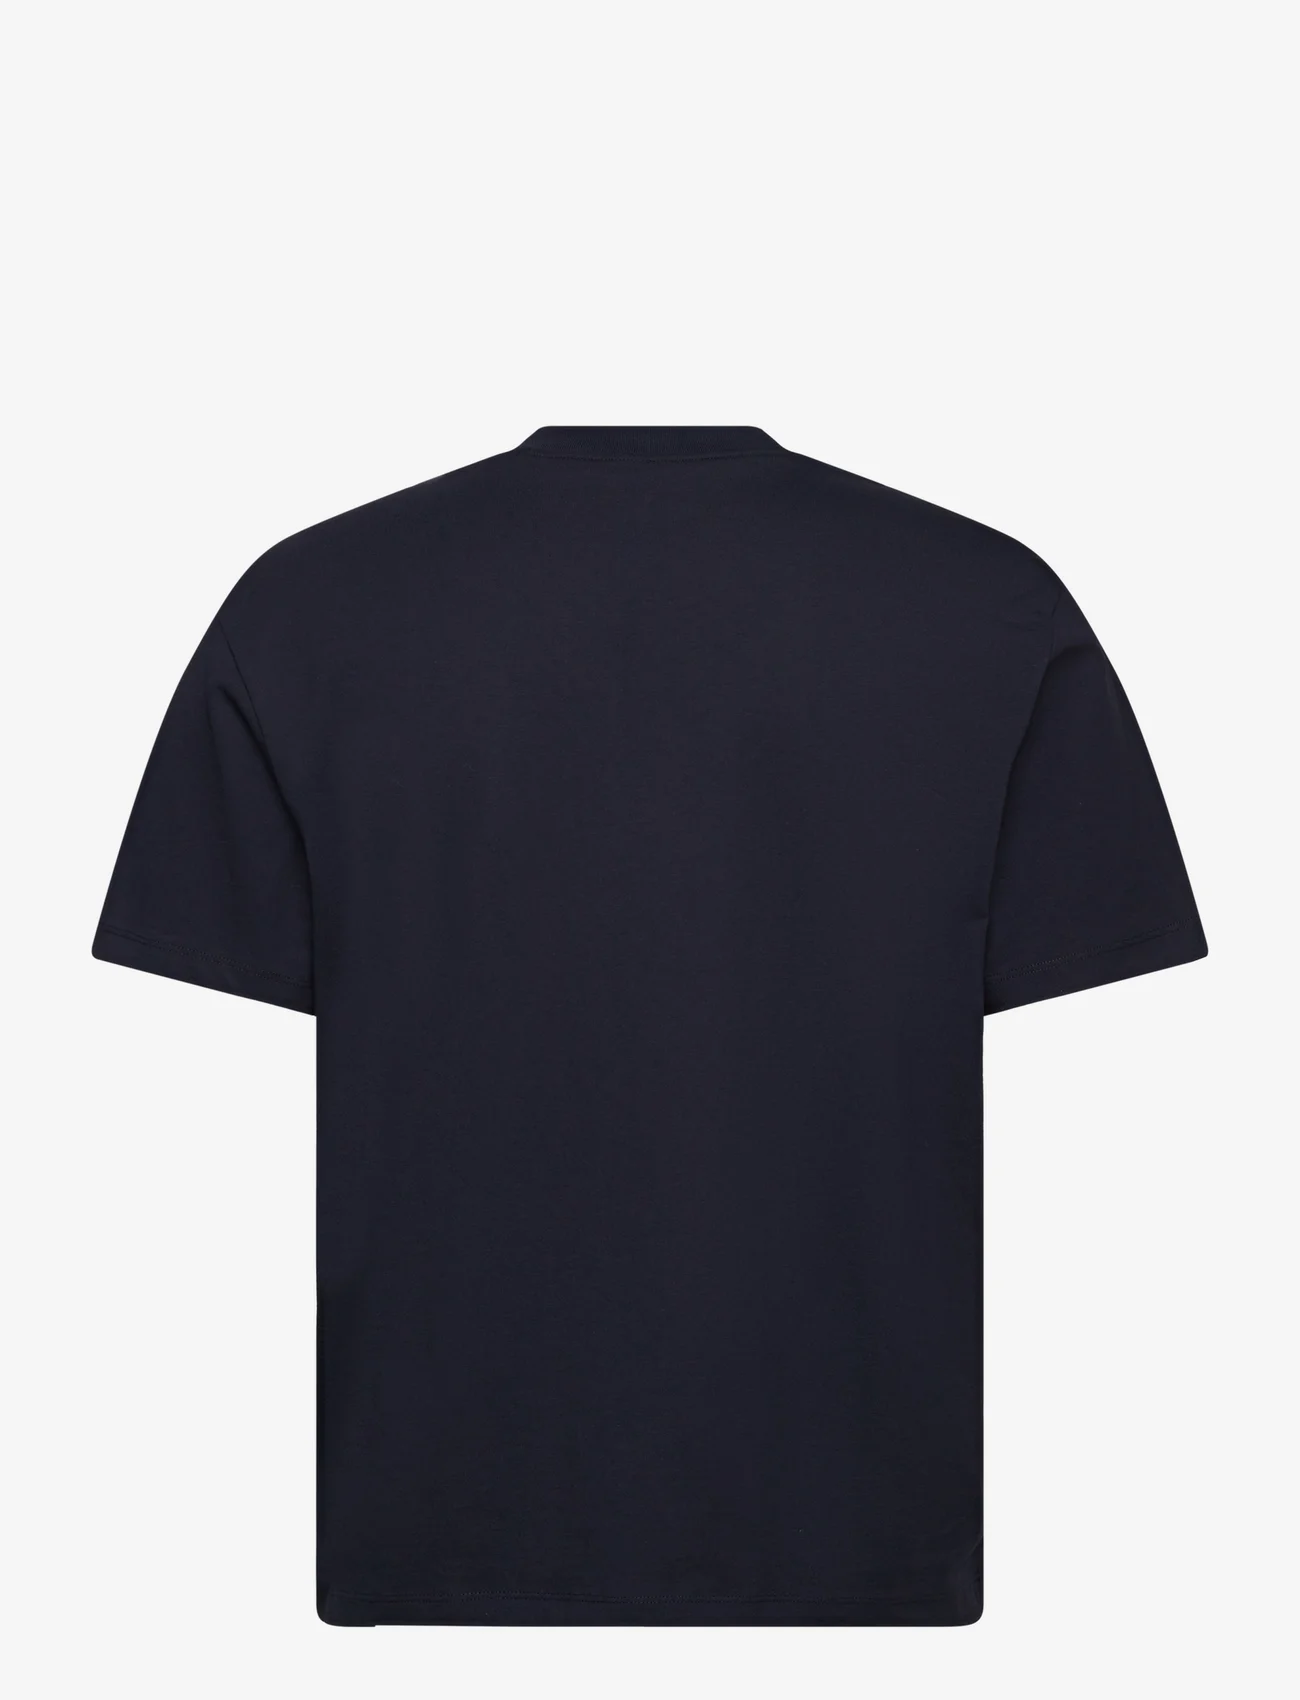 HUGO - Dapolino - laisvalaikio marškinėliai - dark blue - 1